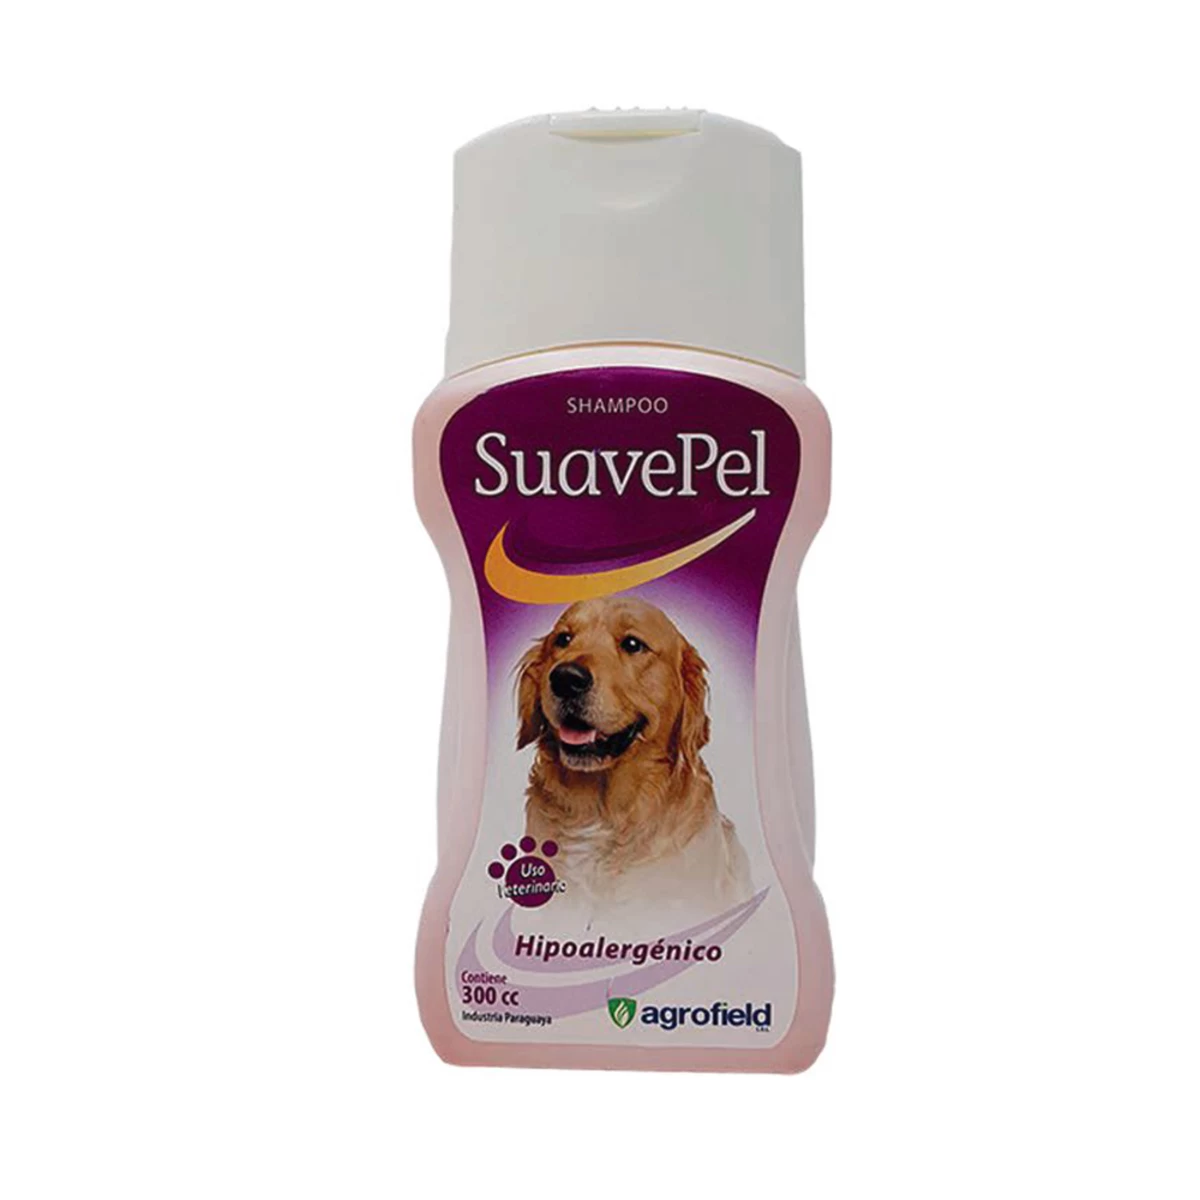 suavepel-shampoo-hipoalergenico-300cc